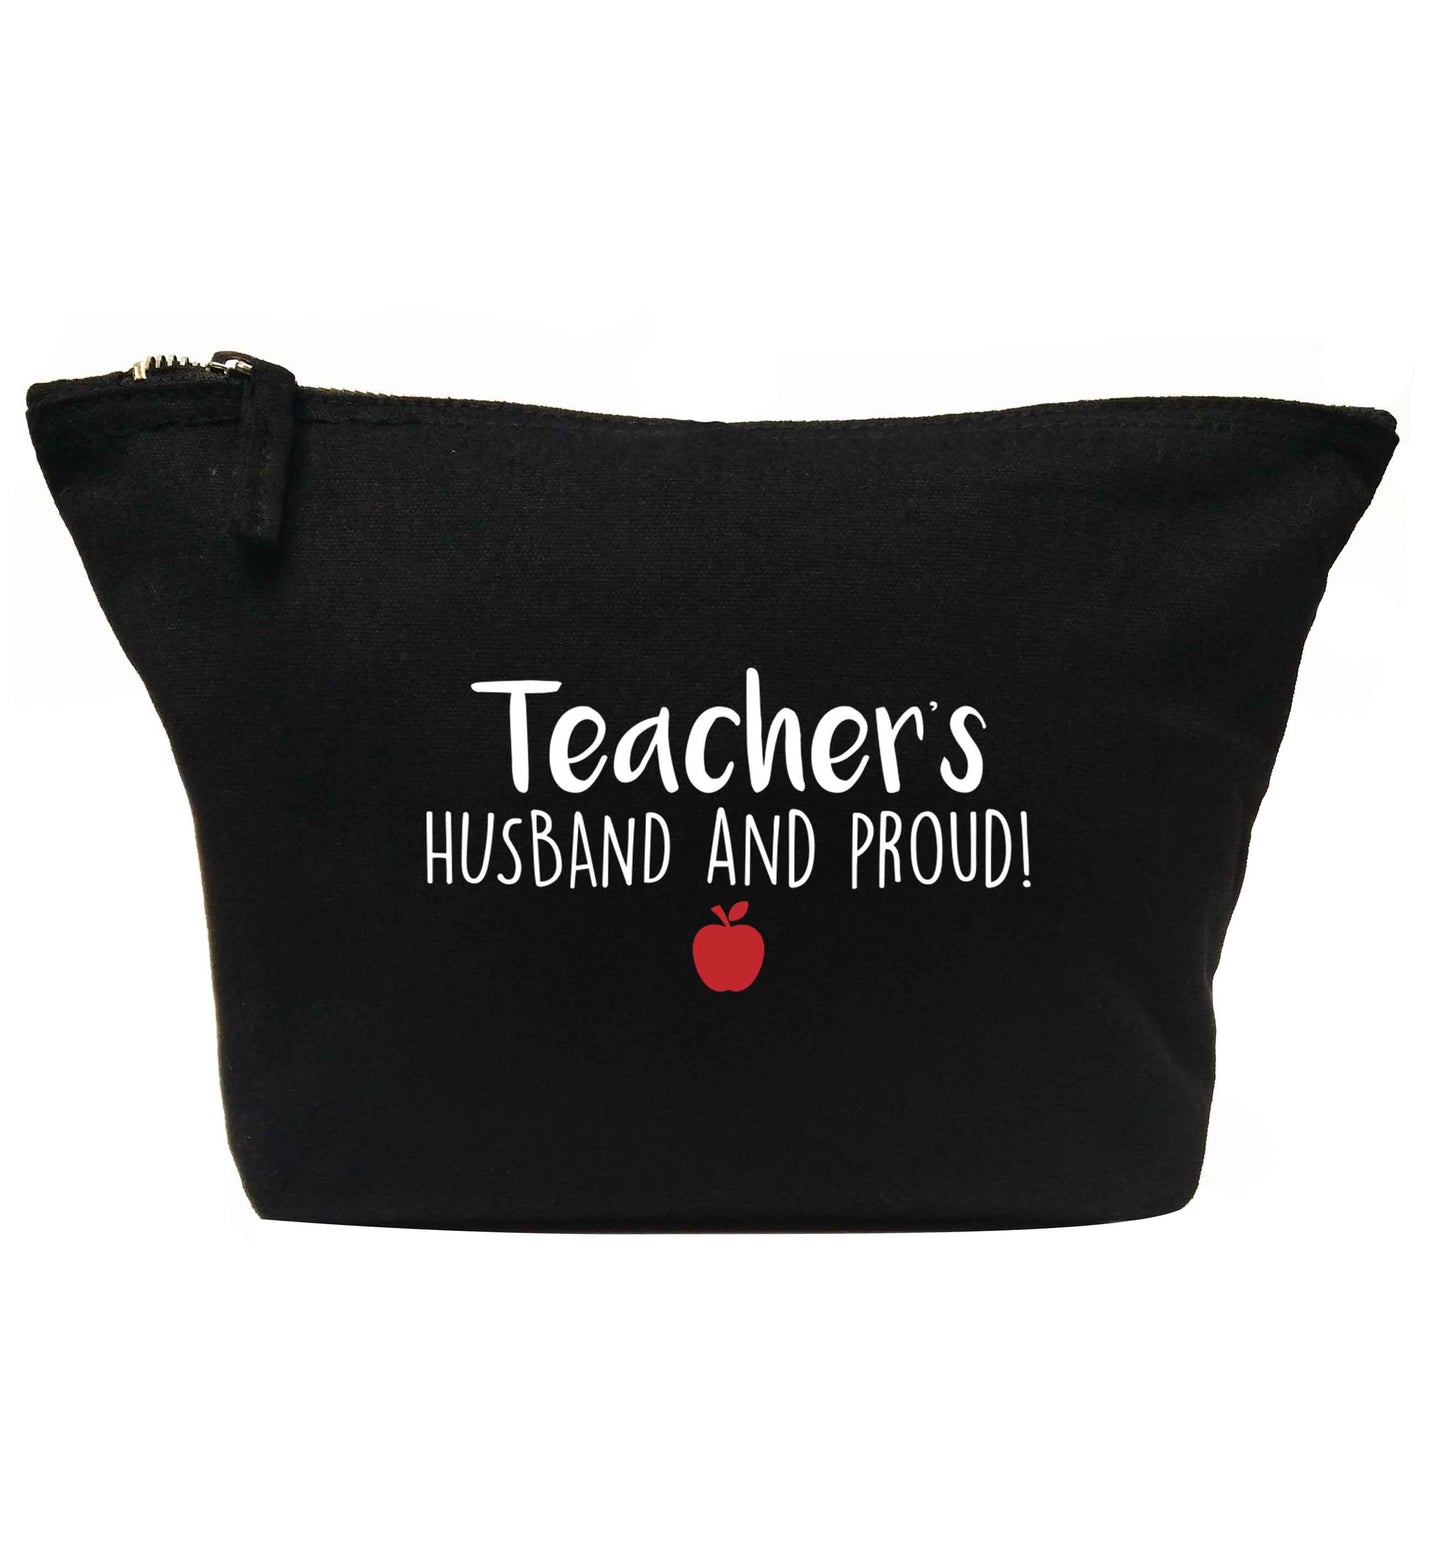 Teachers husband and proud | Makeup / wash bag